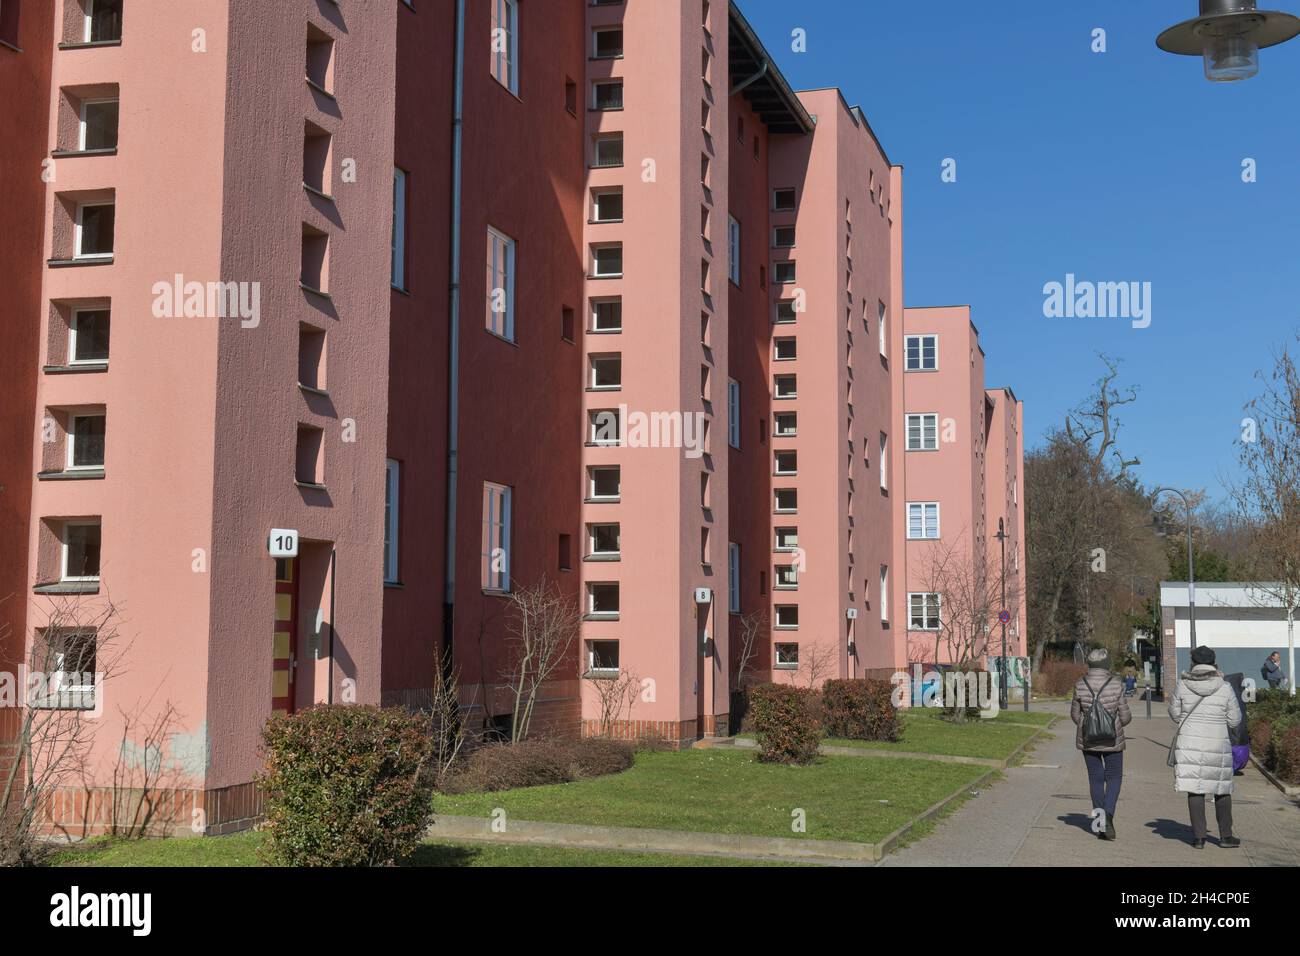 Wohnhäuser, Fritz-Reuter-Allee, Hufeisensiedlung, Britz, Neukölln, Berlin, Deutschland Banque D'Images